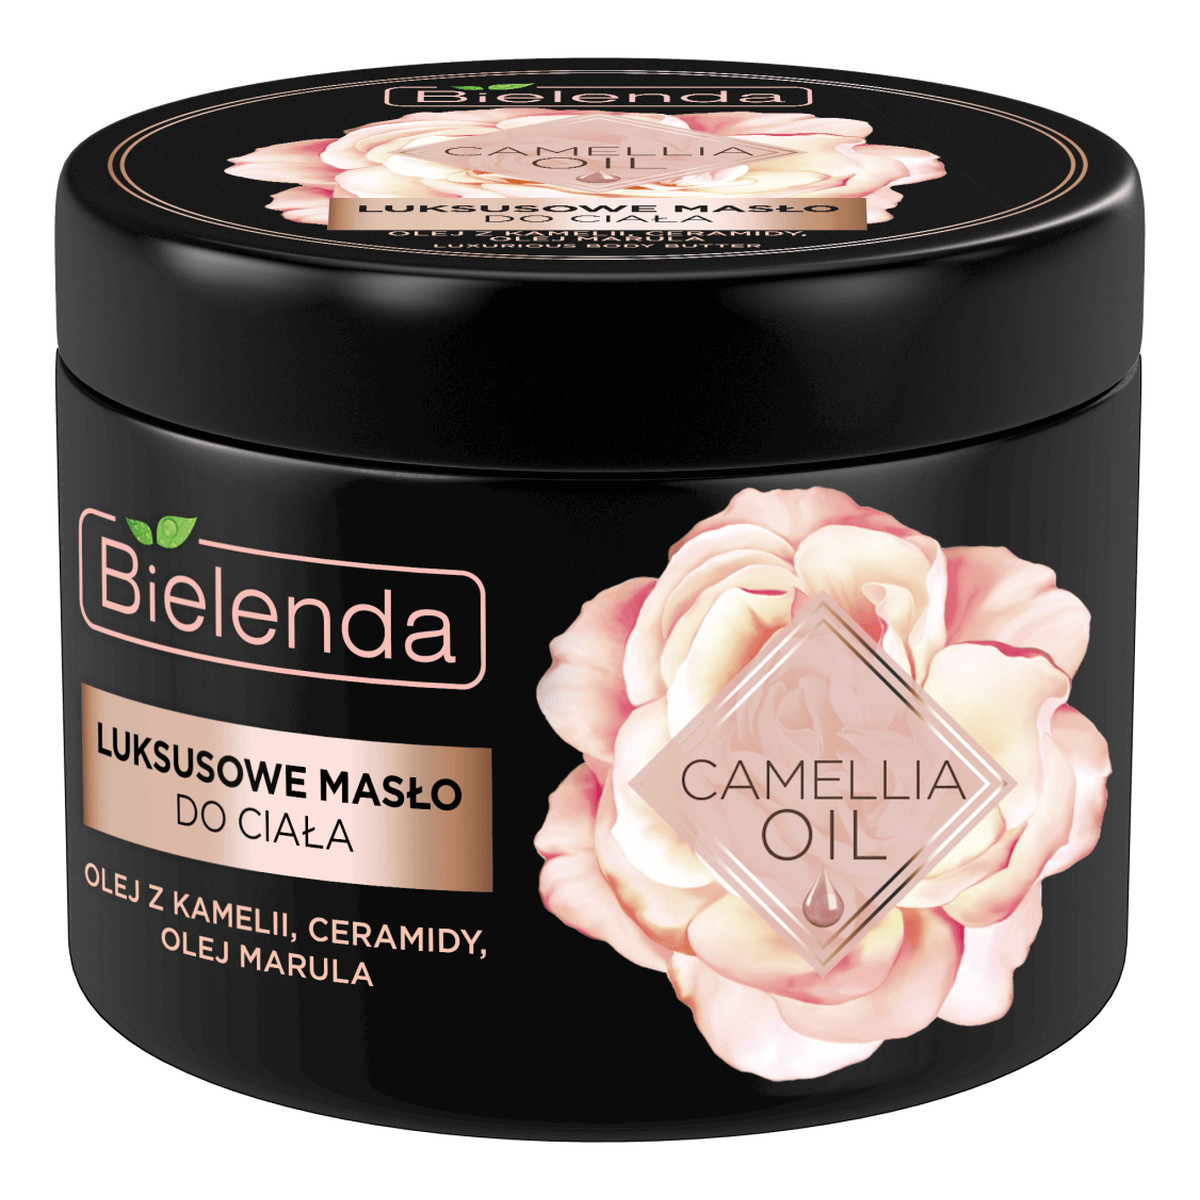 Bielenda Camellia Oil luksusowe masło do ciała skóry dojrzałej 200ml